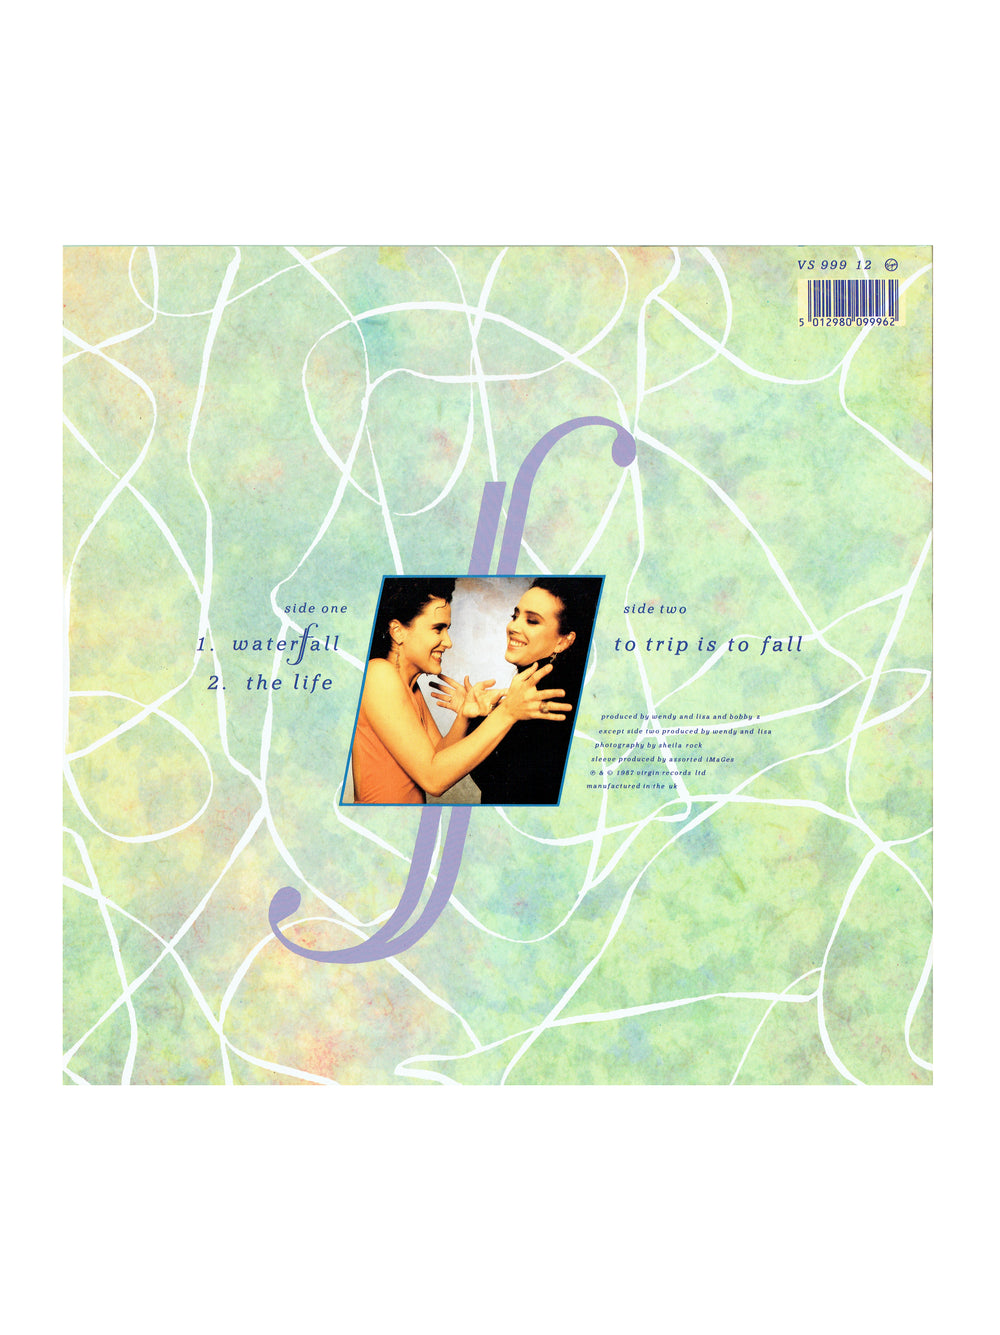 Prince – Wendy & Lisa Waterfall Vinyl UK 12" UK Preloved: 1987